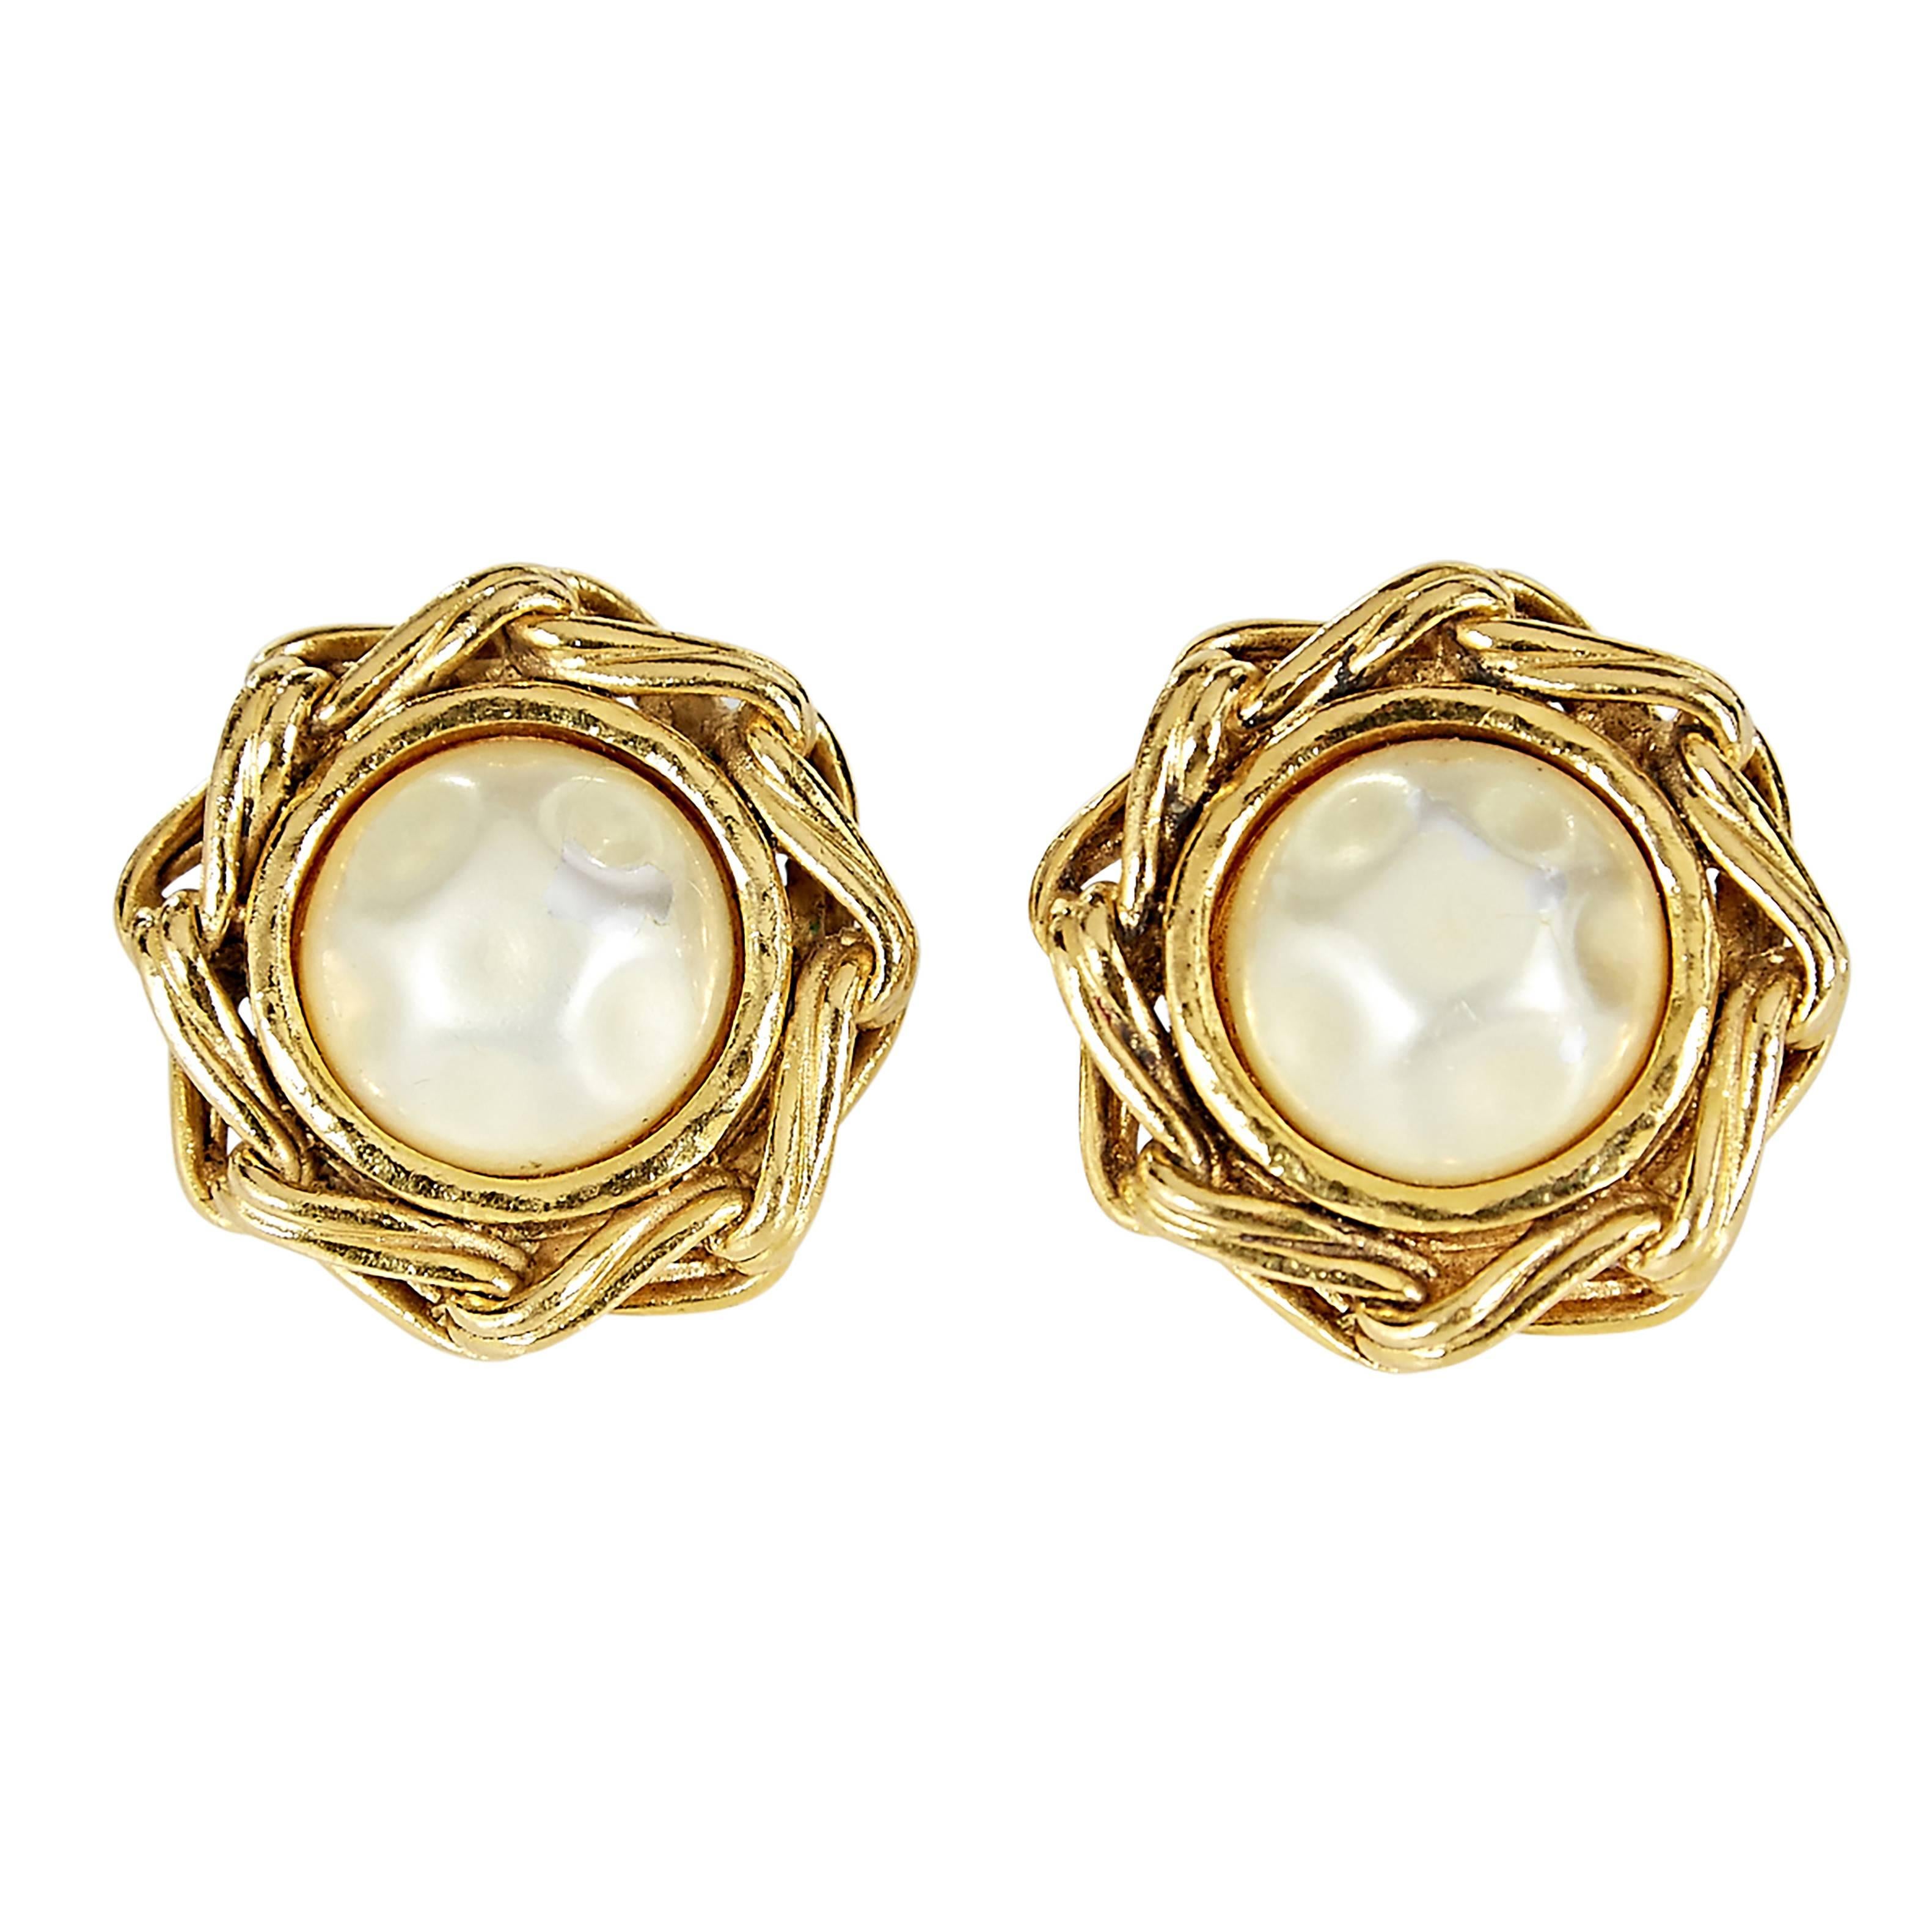 Goldtone Chanel Clip-On Earrings